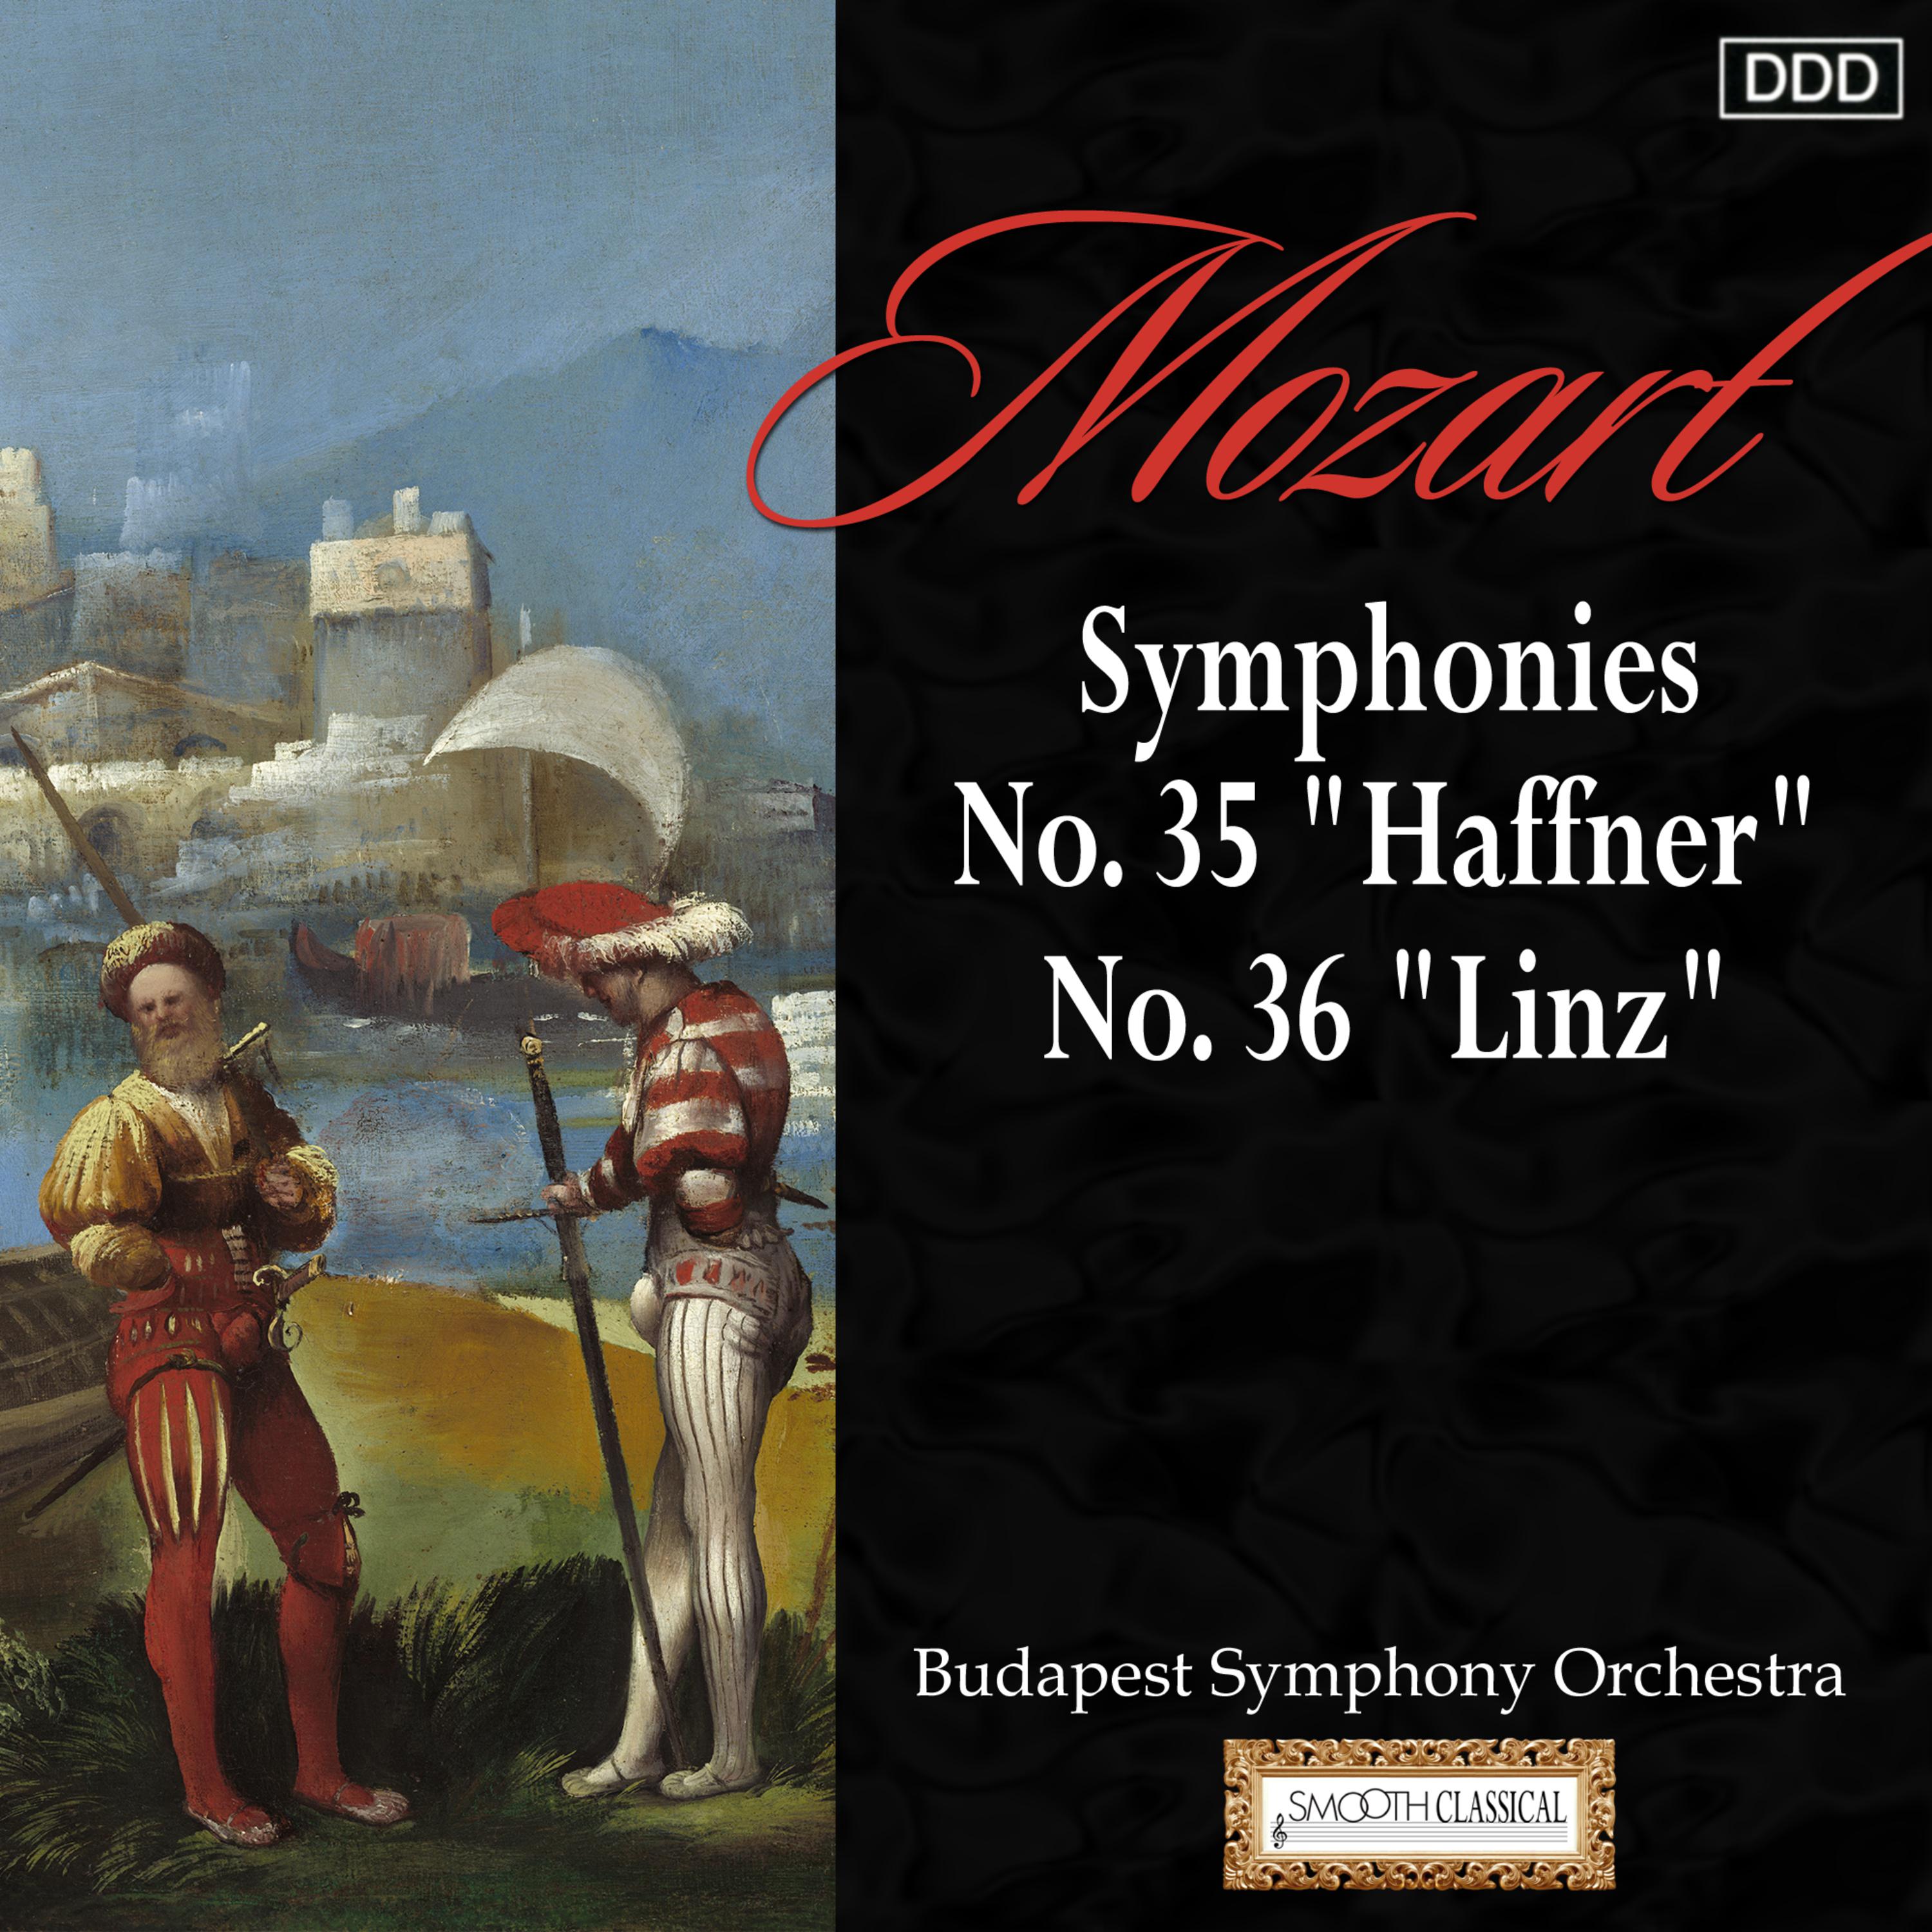 Mozart: Symphonies Nos. 35, "Haffner" and 36, "Linz"